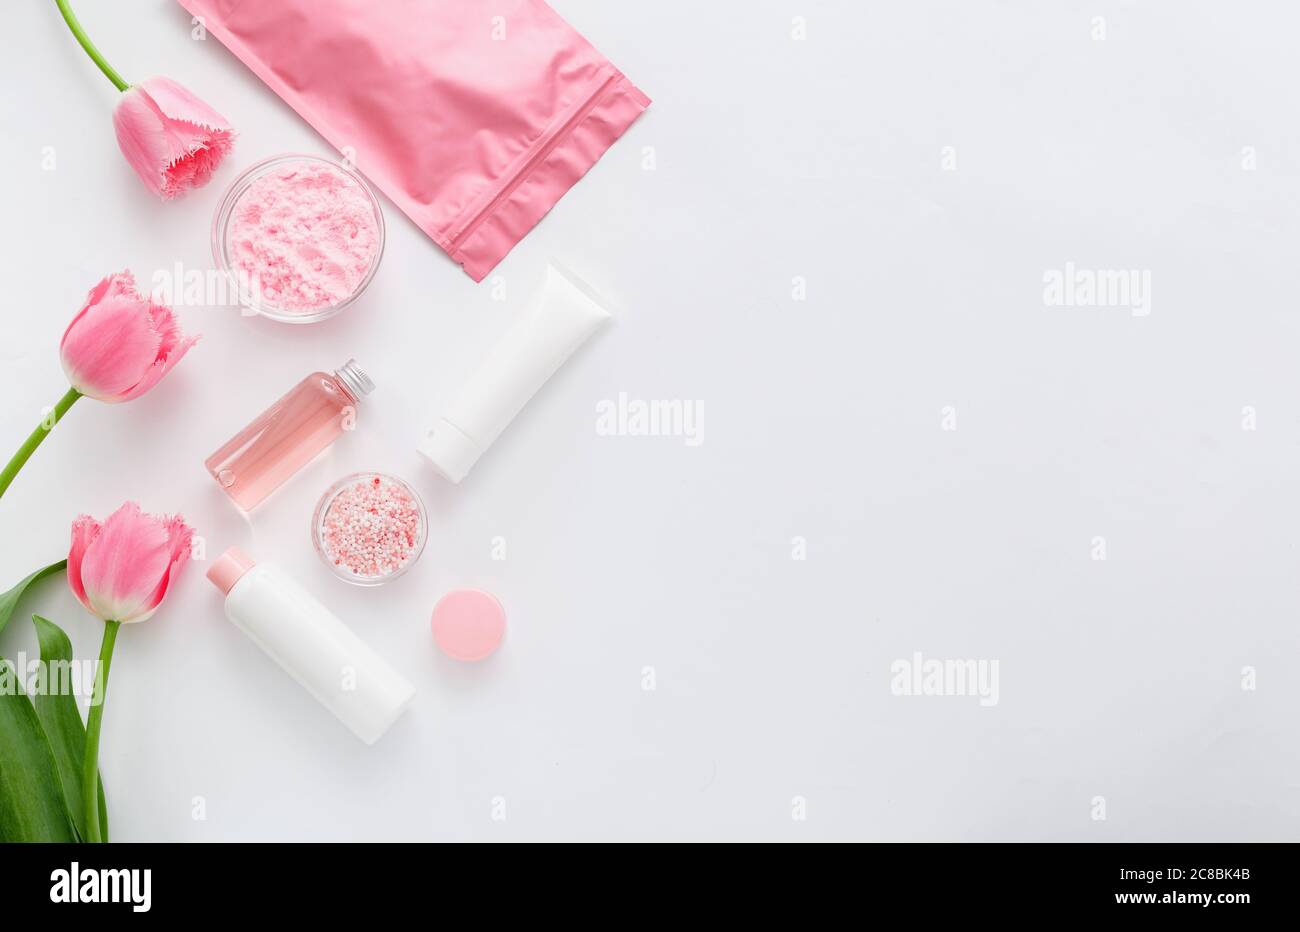 Prodotti rosa per bagno di cura della pelle. Bottiglie cosmetiche, provette, confezionamento in crema, polvere e perle per vasche da bagno con rosa. Centro benessere cosmetico Foto Stock